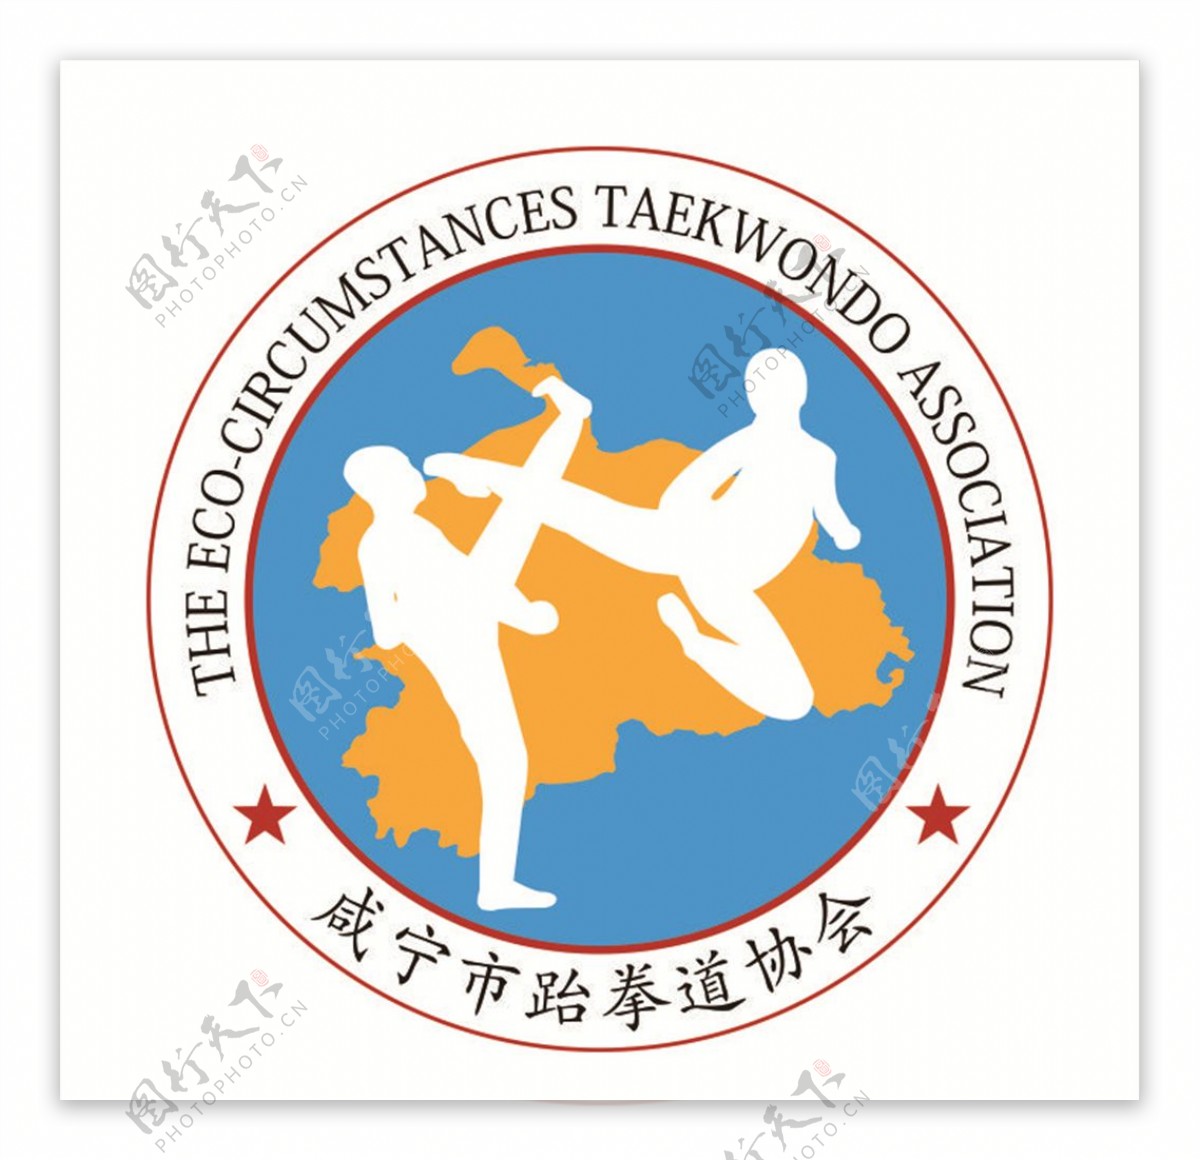 咸宁跆拳道协会LOGO标志